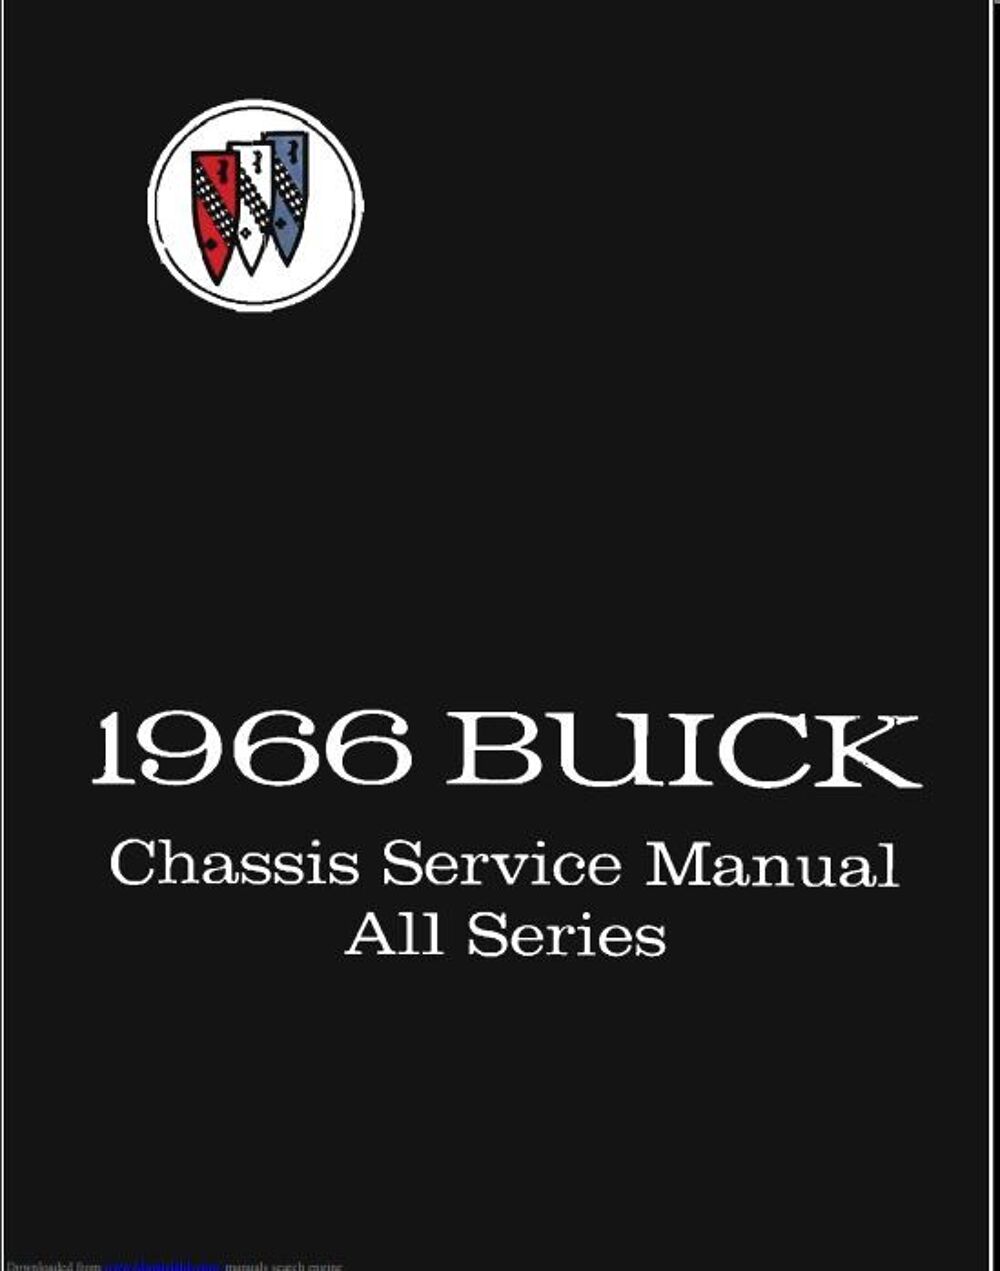 Manuels de r&eacute;paration Buick 1965 1966 